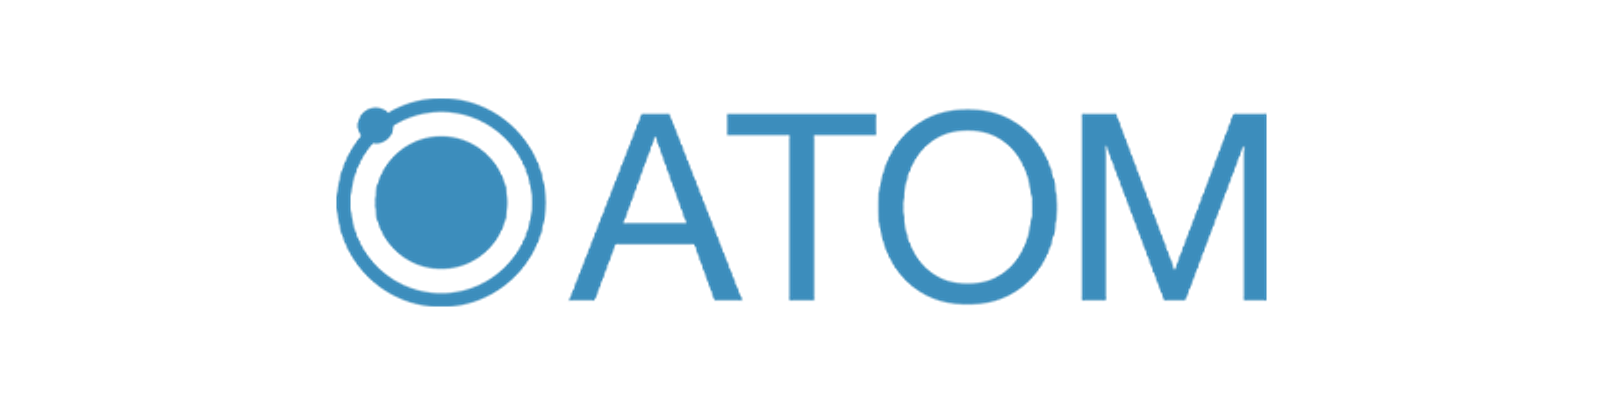 ATOM 運用型広告の統合管理プラットフォーム